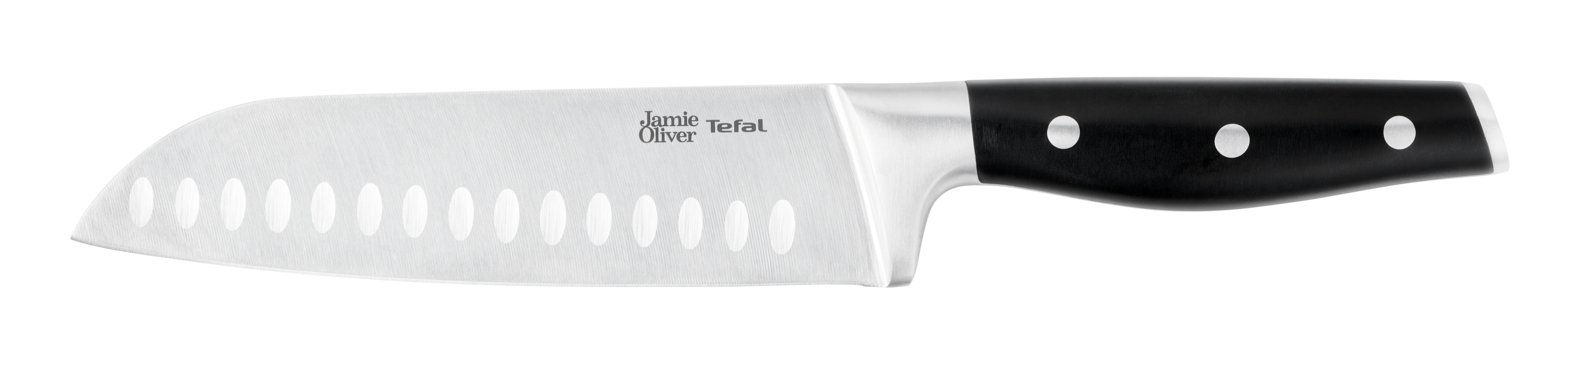 Нож сантоку Jamie Oliver 18 см K2671844 нож сантоку jamie oliver 18 см k2671844